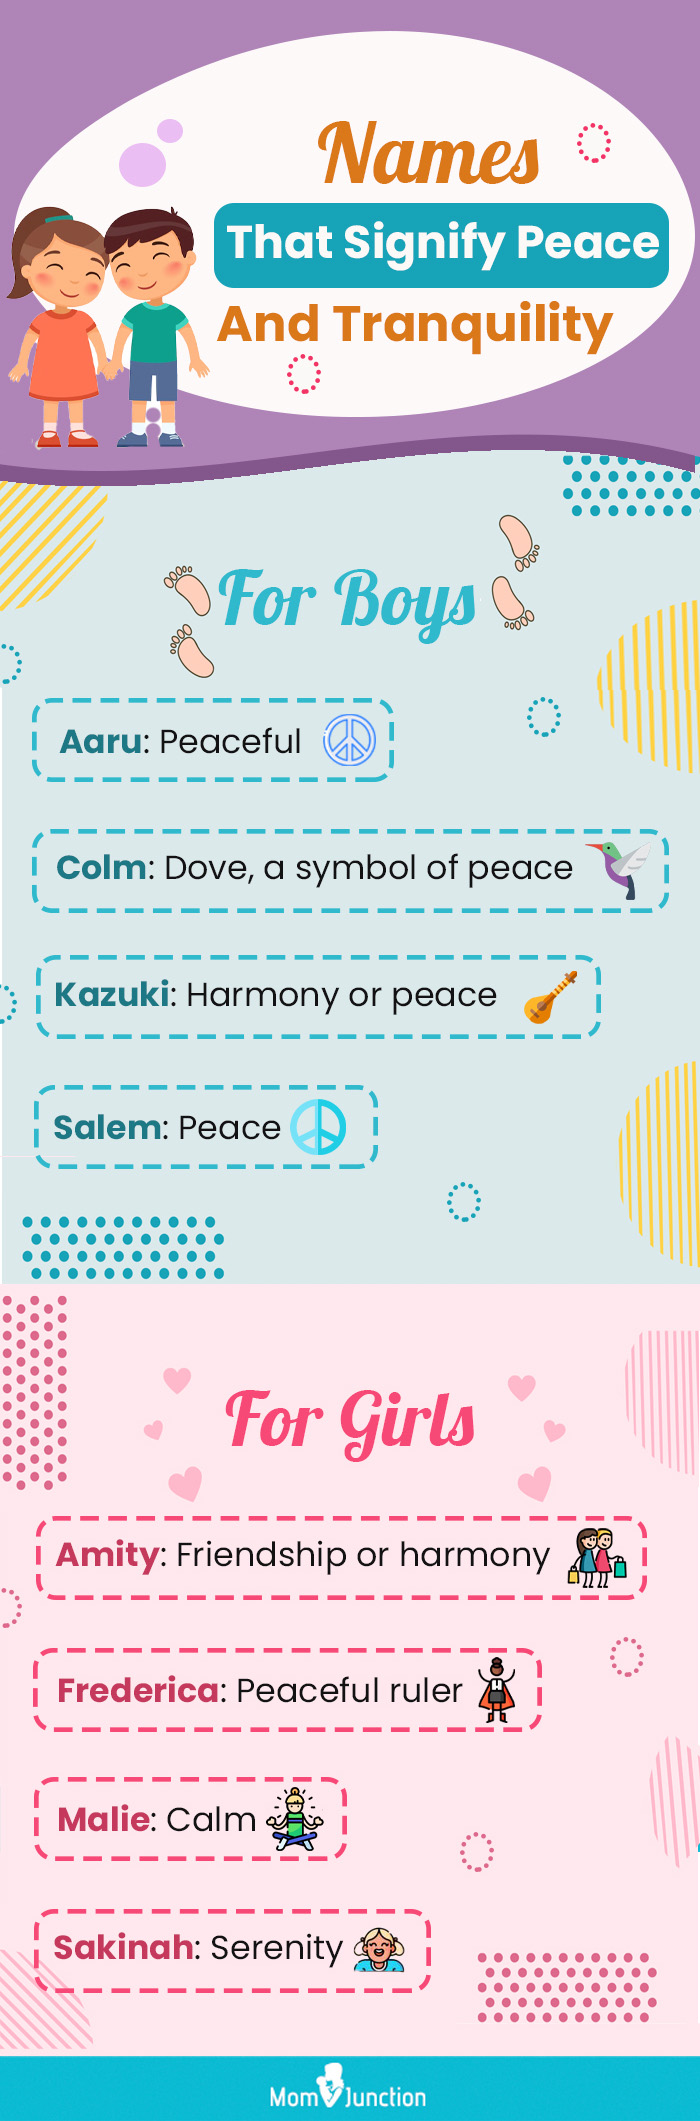 象征和平与安宁的名字(信息图)